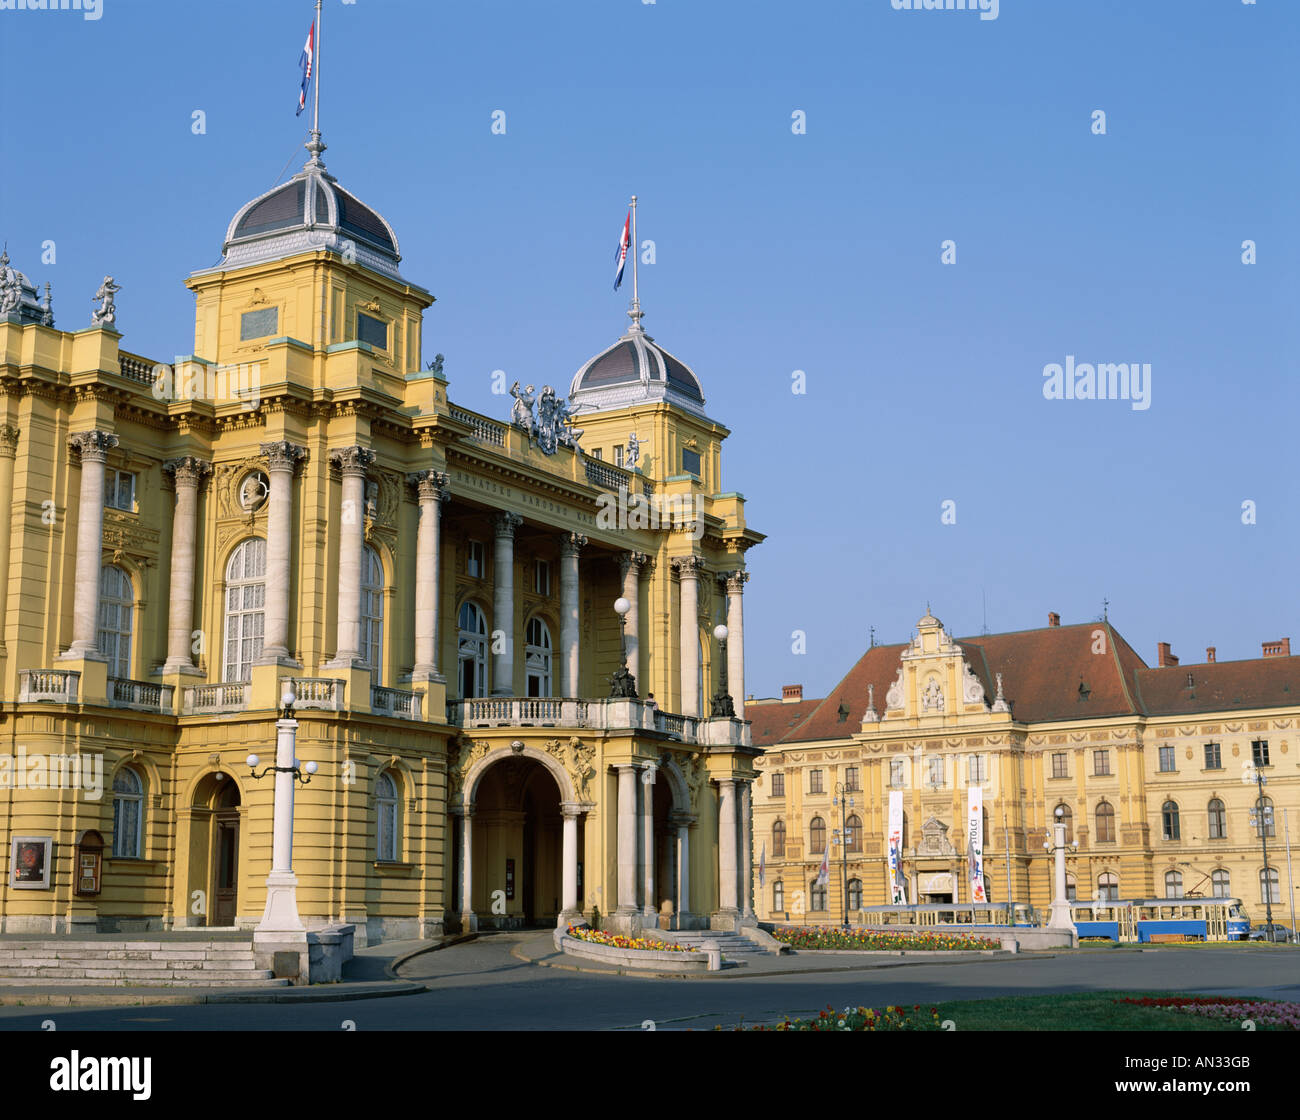 Marshal Tito Square / The Croatian National Theatre, Zagreb, Croatia Stock Photo